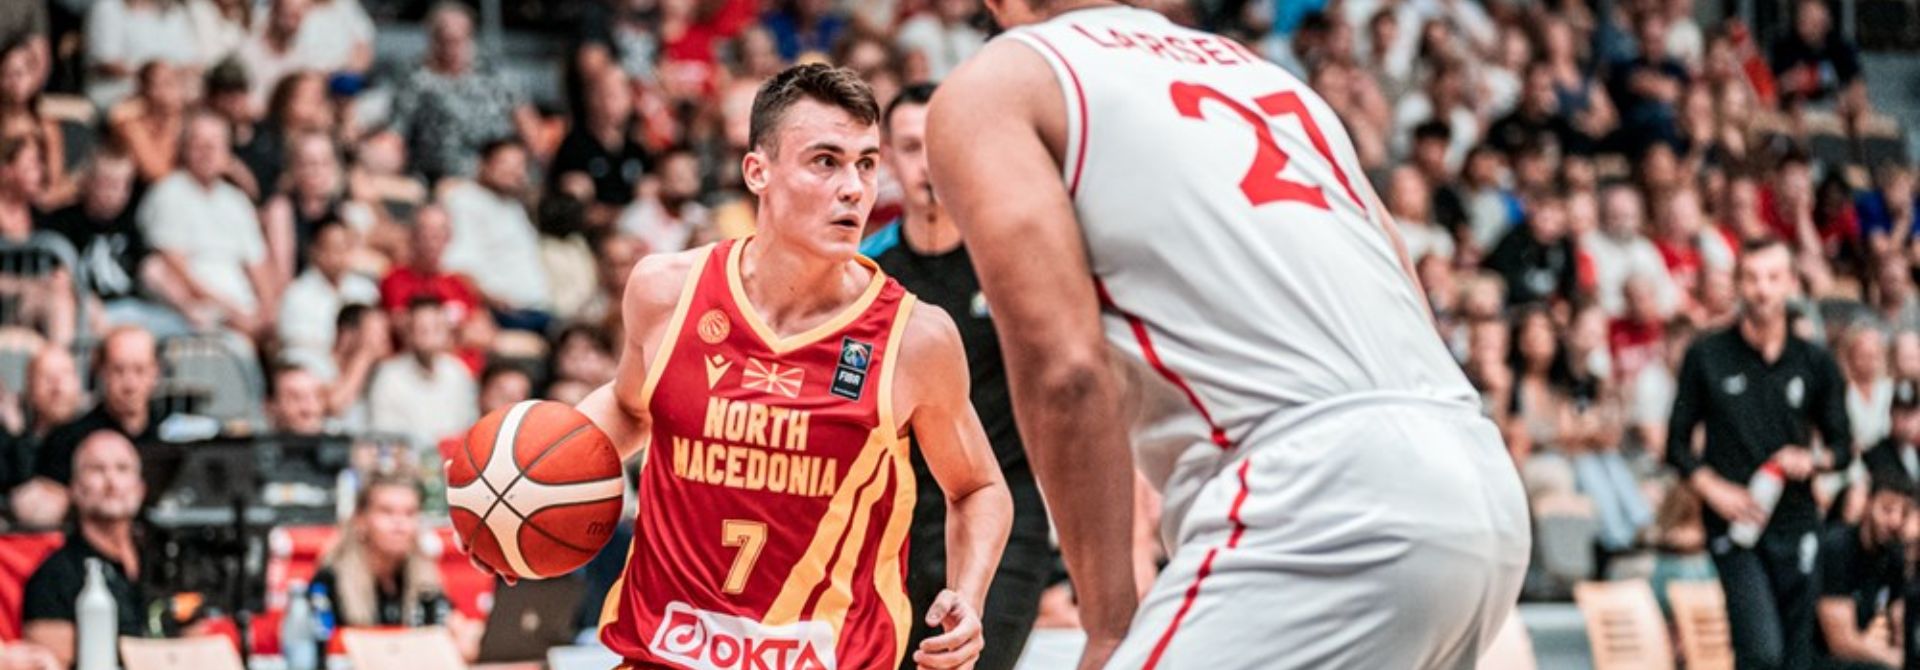 29 очков и победный трехочковый с сиреной Димитриевича помогли Северной Македонии обыграть Данию